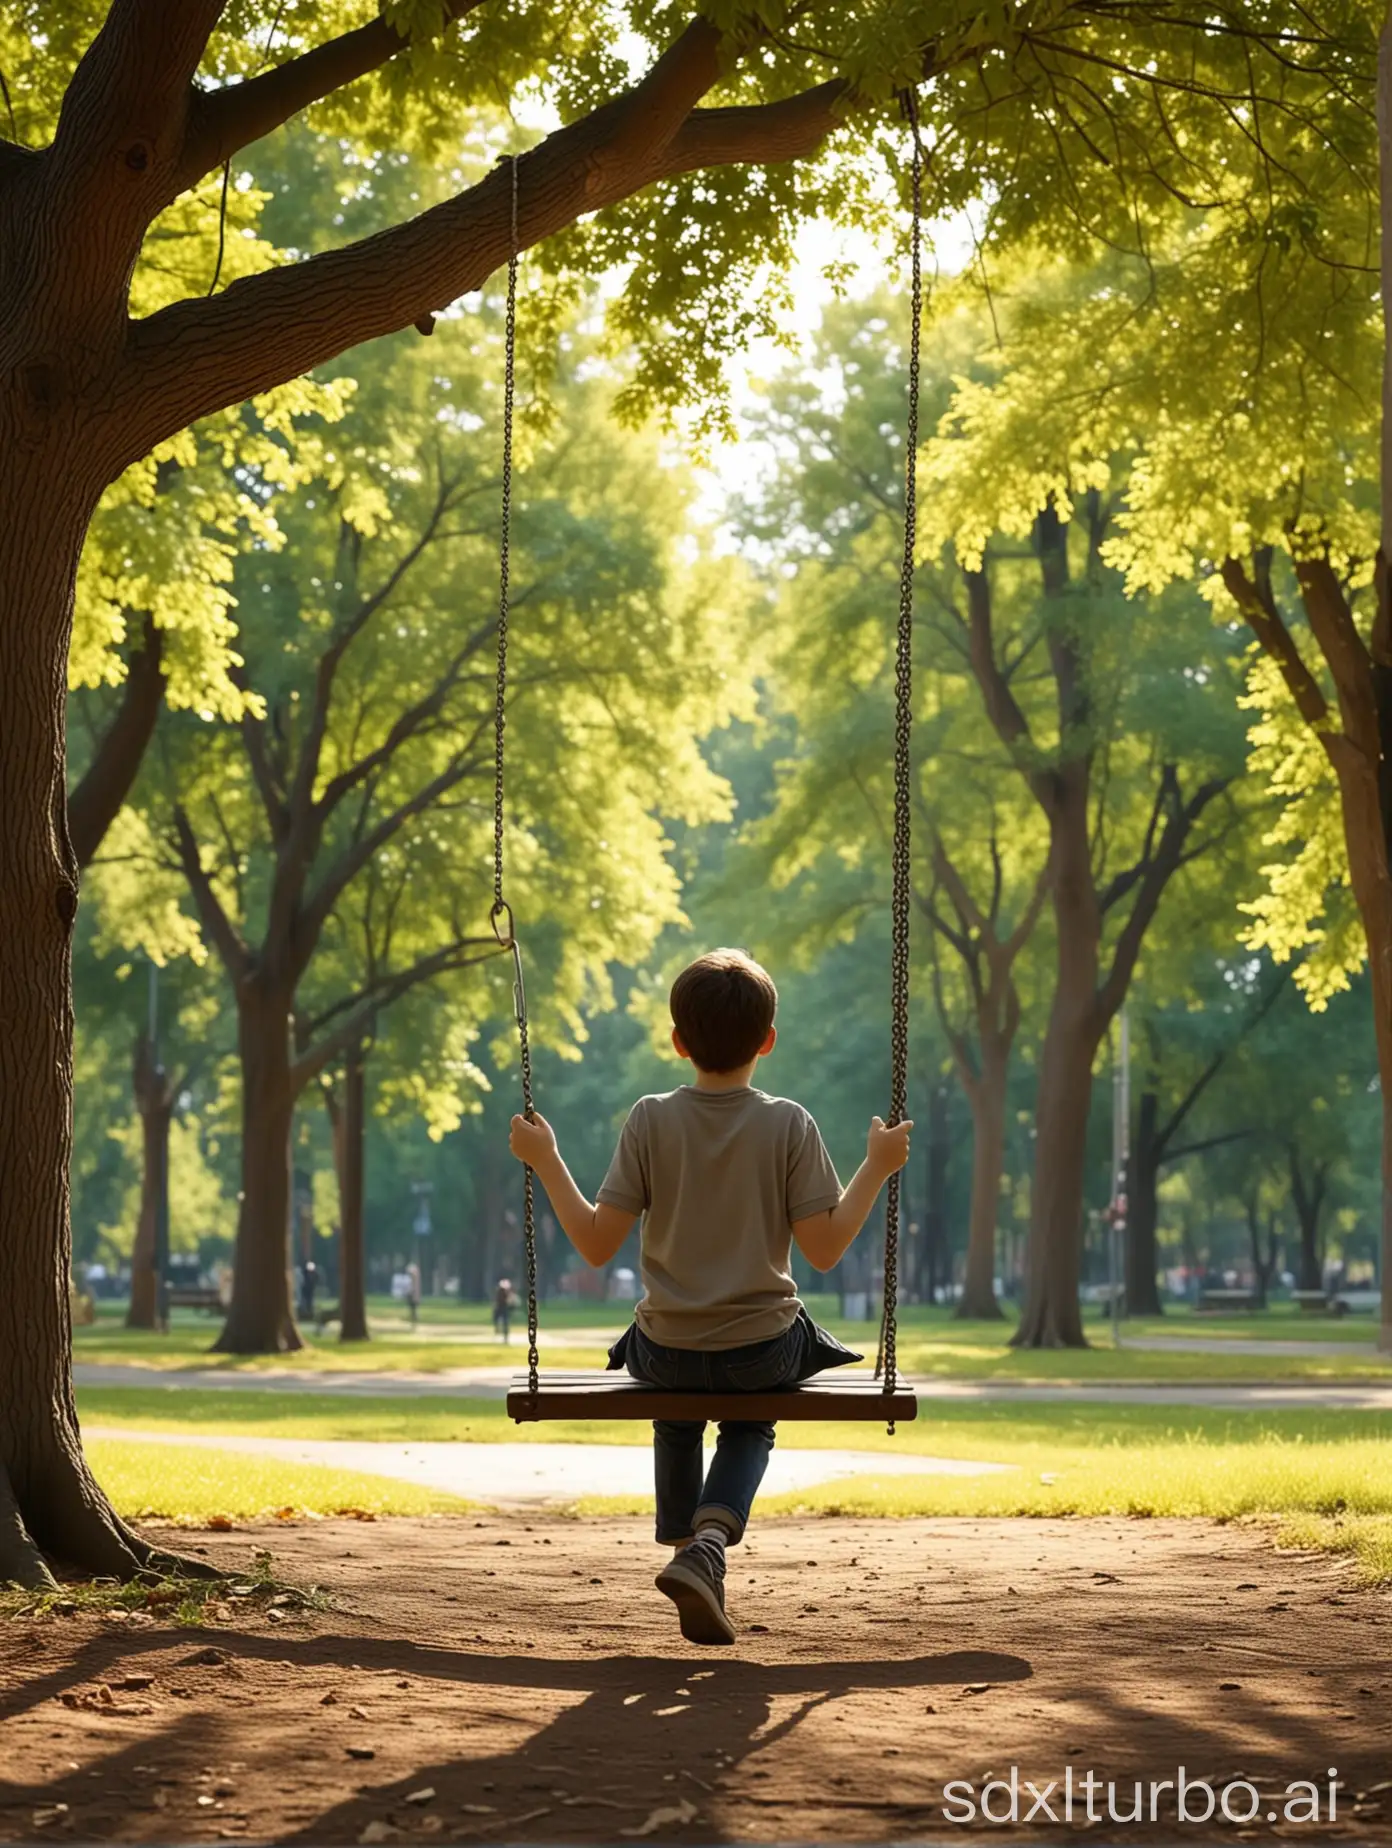 Lonely-Boy-Sitting-Backwards-on-Swing-in-Realistic-Park-Scene